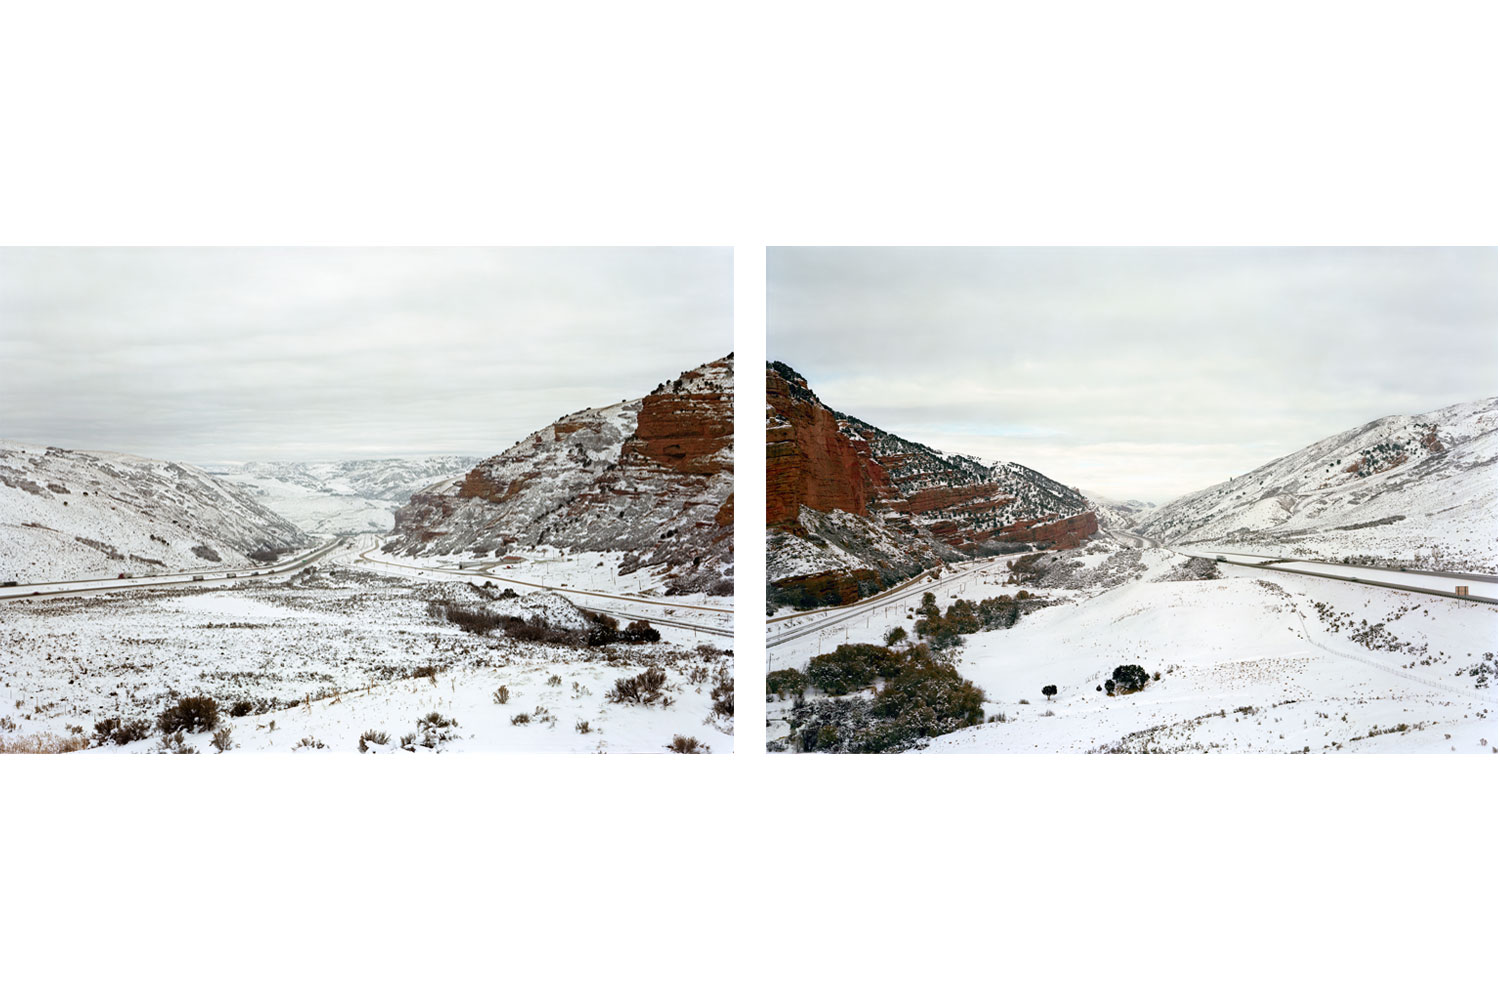 (L) Untitled (Echo Canyon, East), near Echo, Utah, 2007; (R) Untitled (Echo Canyon, West), near Echo, Utah, 2007